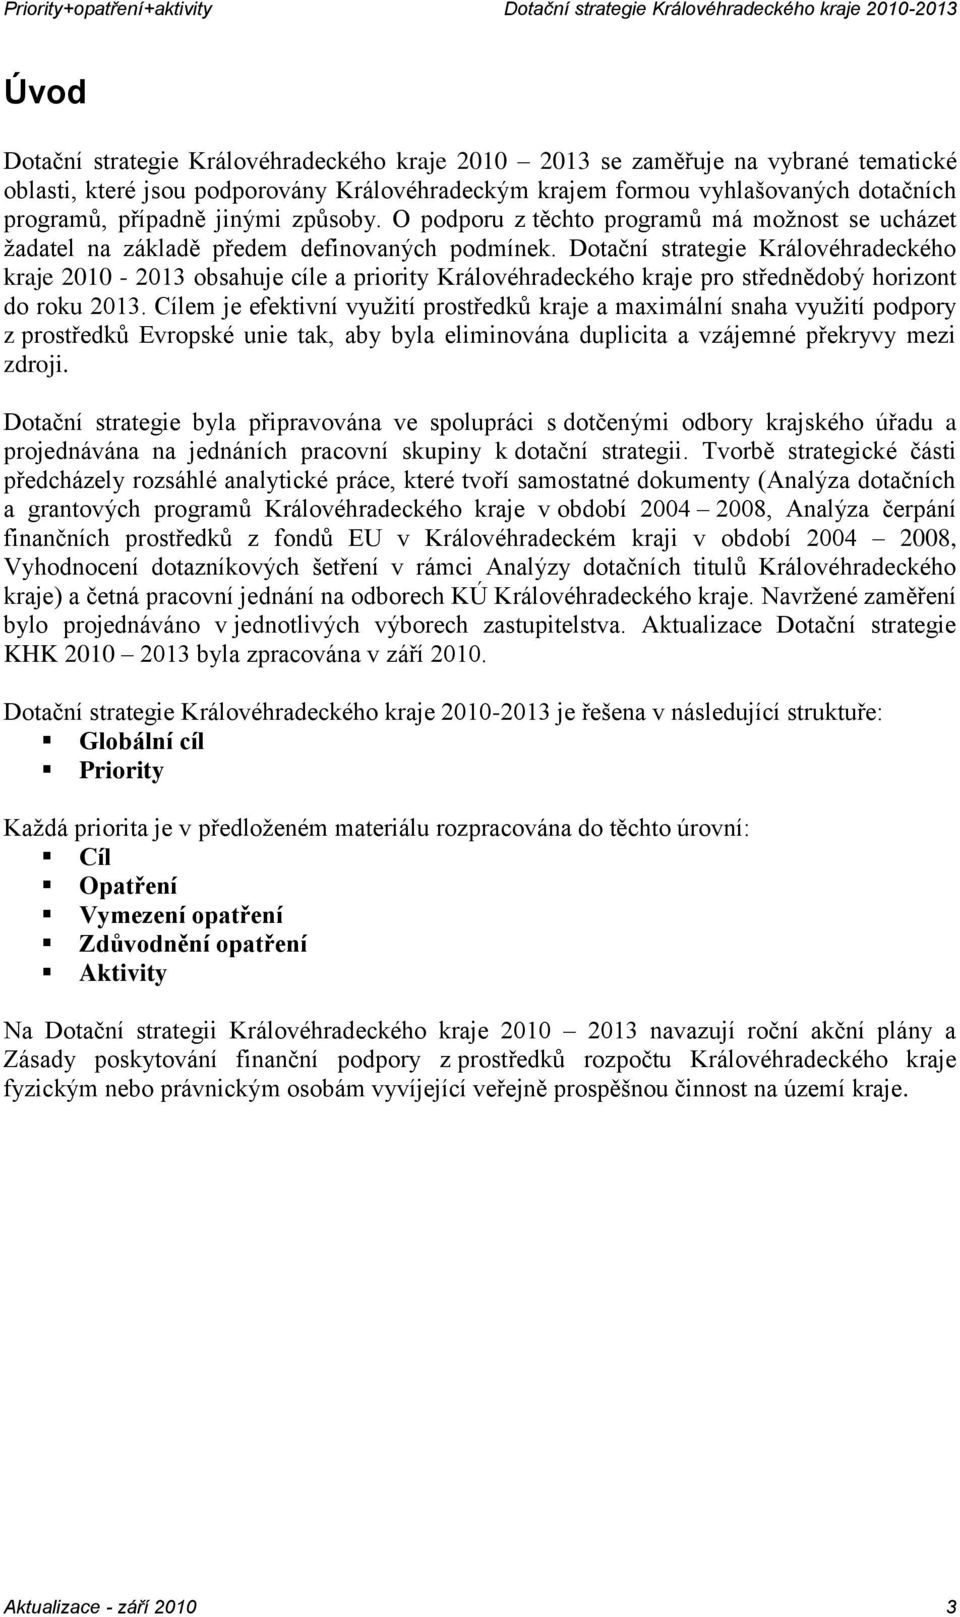 Dotační strategie Královéhradeckého kraje 2010-2013 obsahuje cíle a priority Královéhradeckého kraje pro střednědobý horizont do roku 2013.